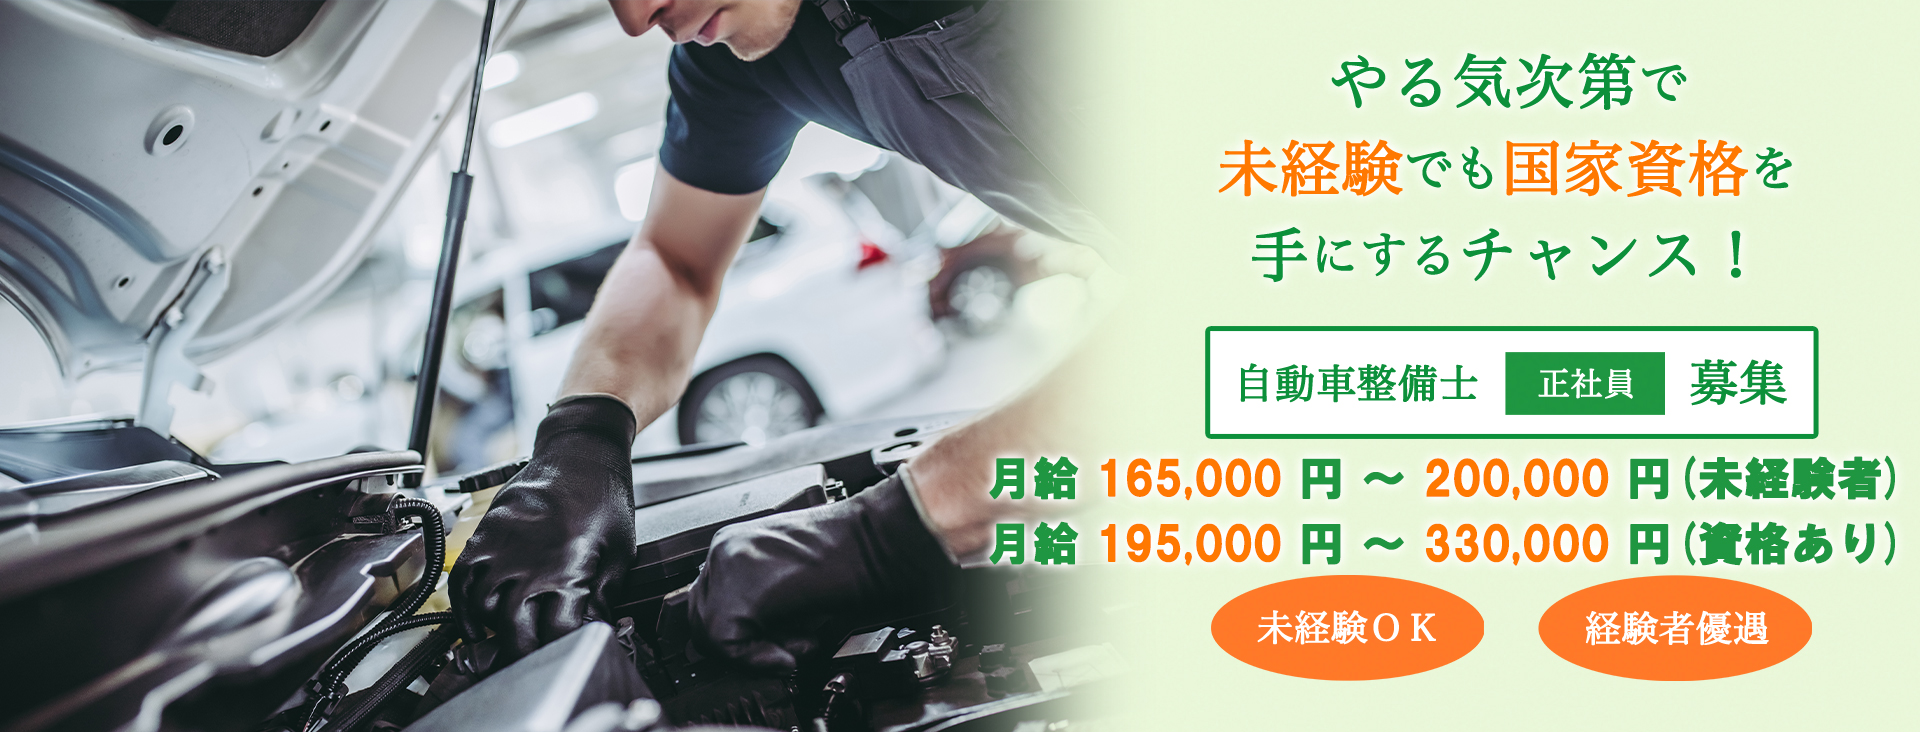 茨城県桜川市 自動車整備士の転職求人情報 公式